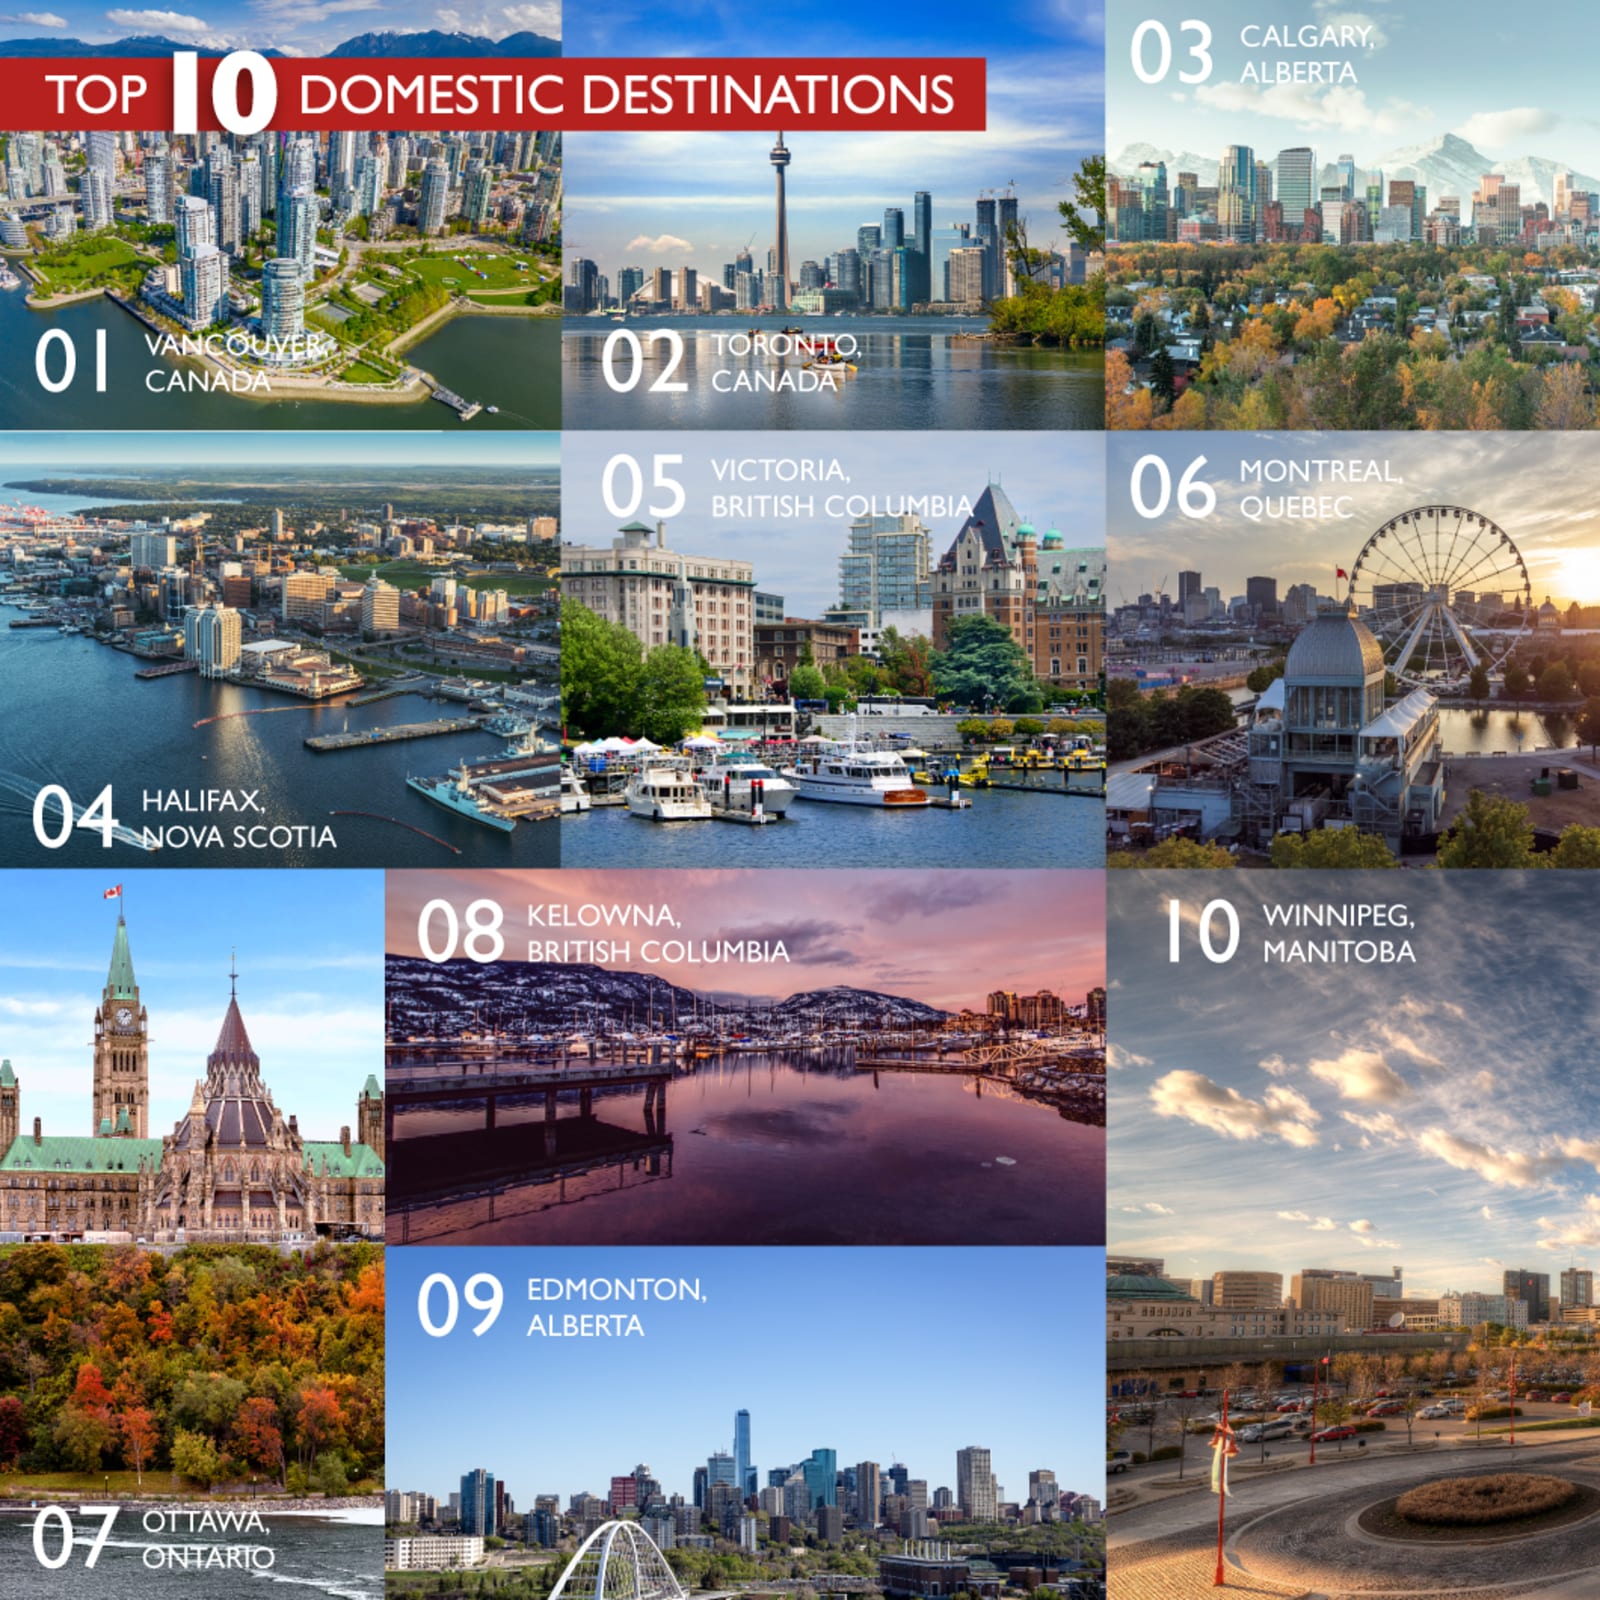 Canada - Top 10 Domestic Destinations